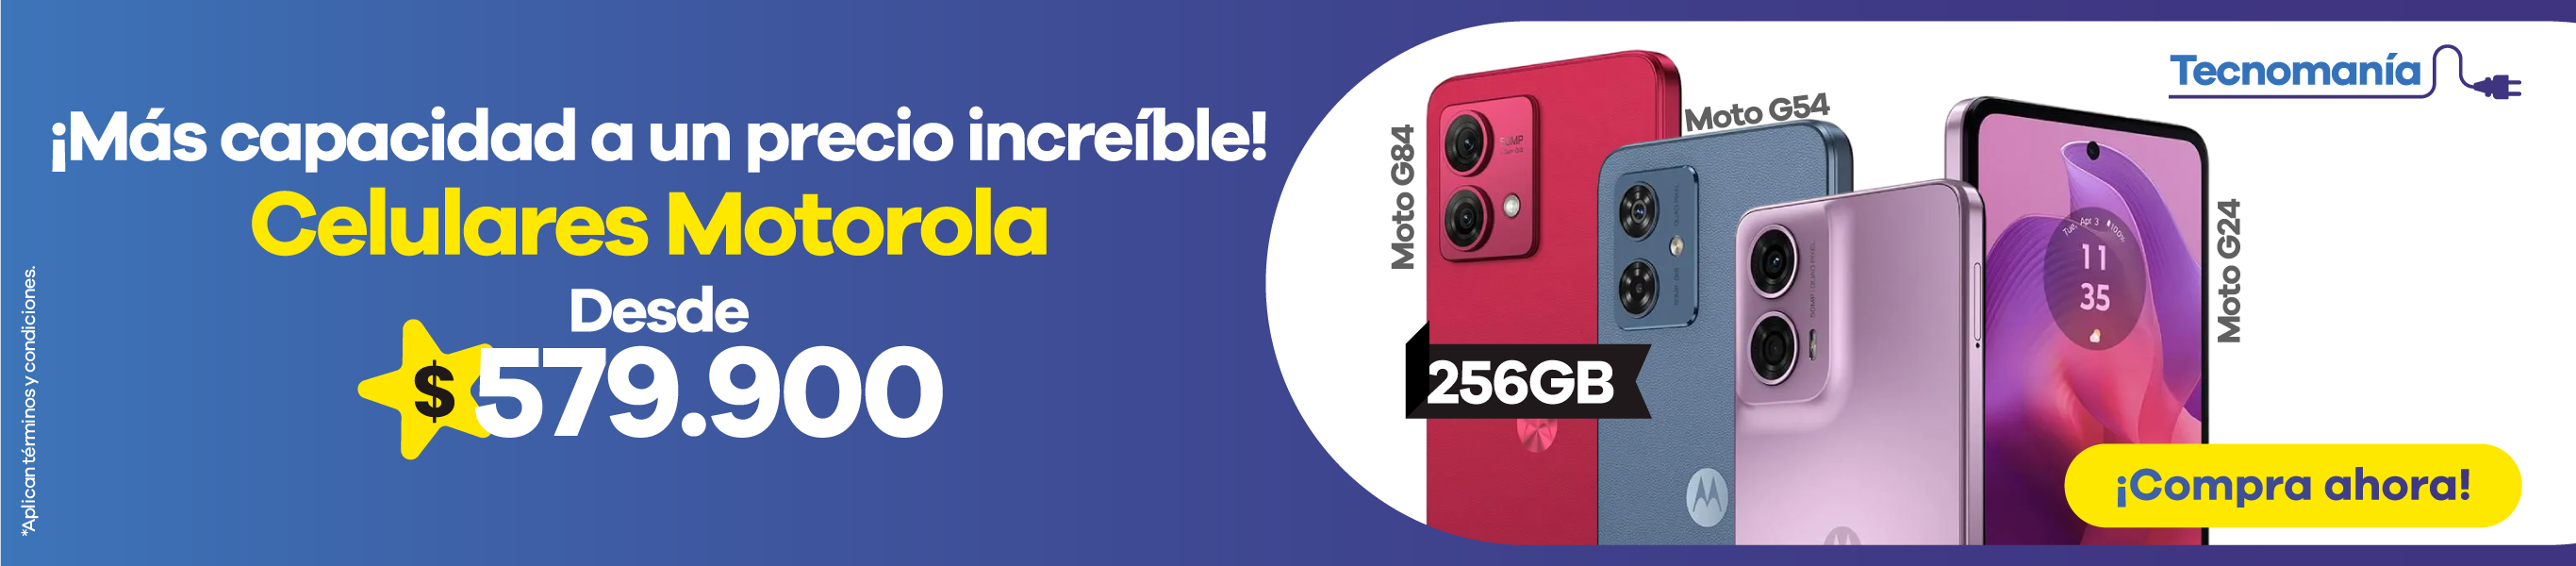 Motorola 256GB